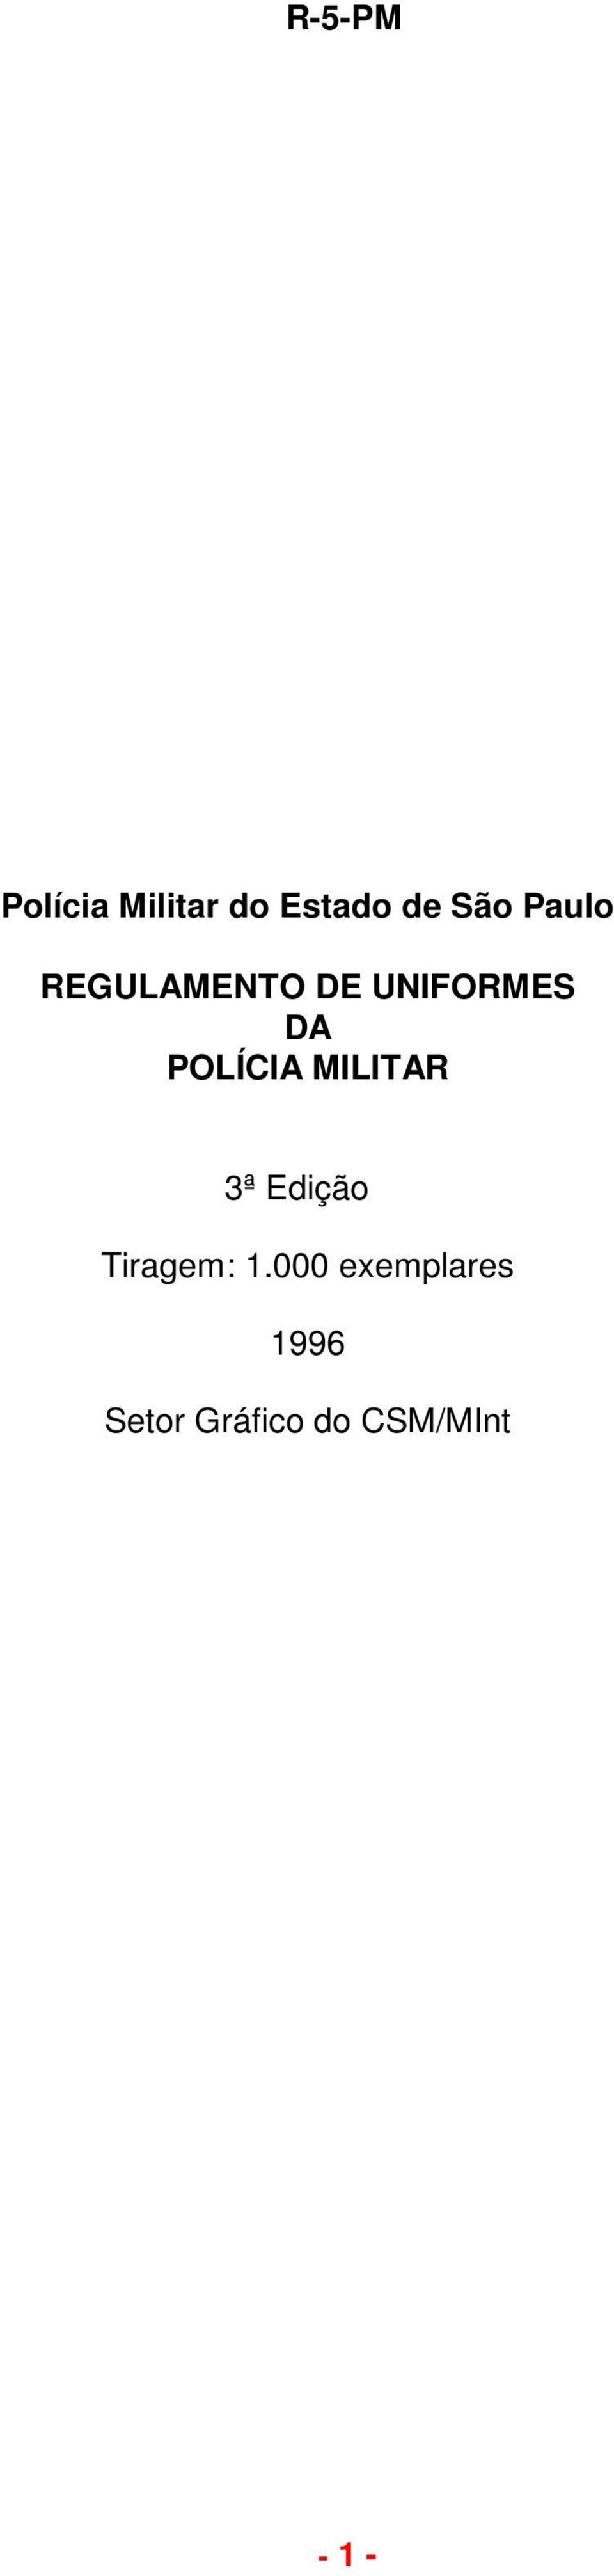 POLÍCIA MILITAR 3ª Edição Tiragem: 1.